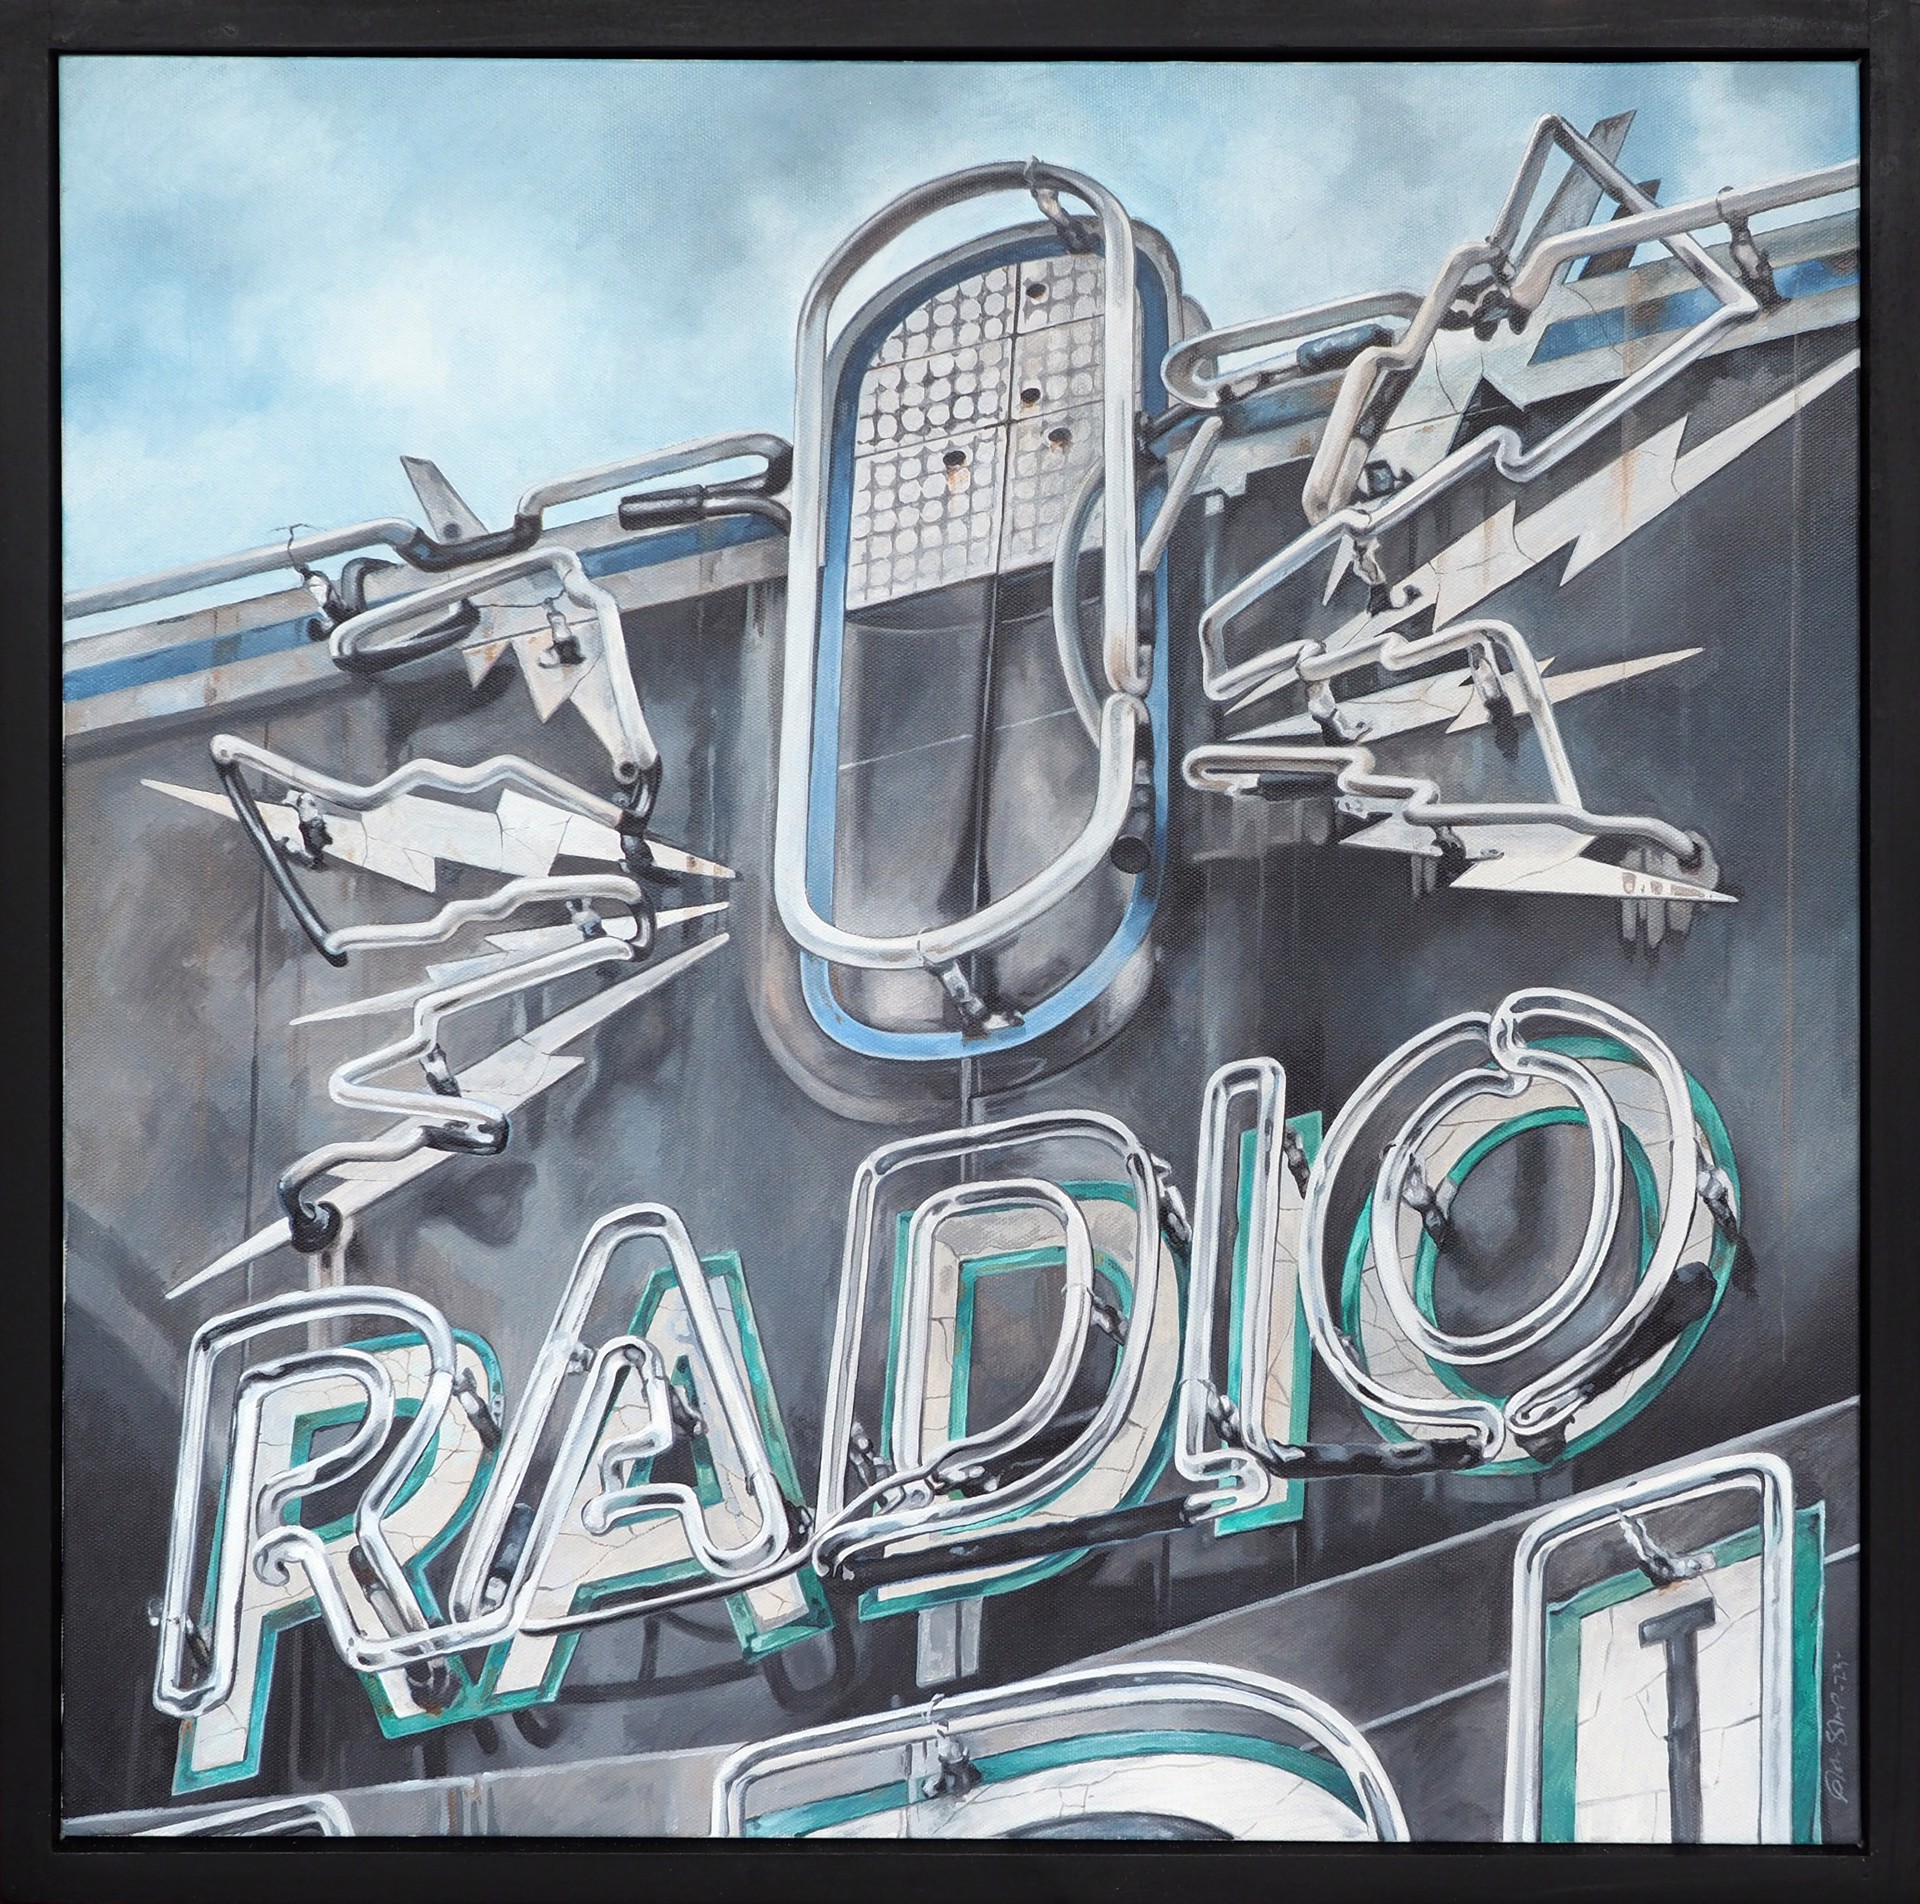 Radio Radio by John Sharp